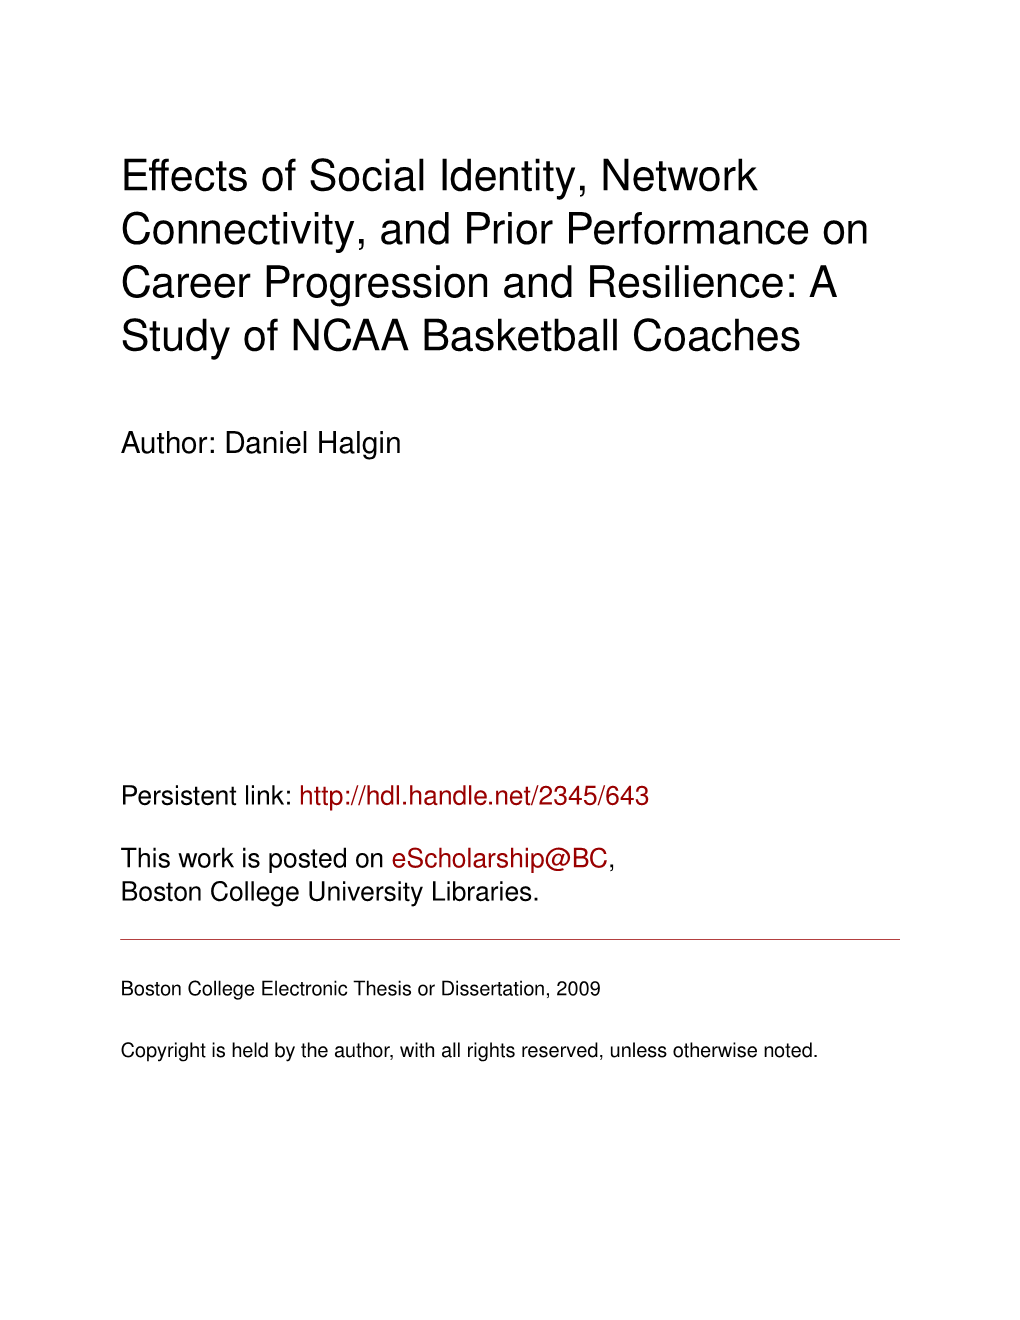 A Study of NCAA Basketball Coaches